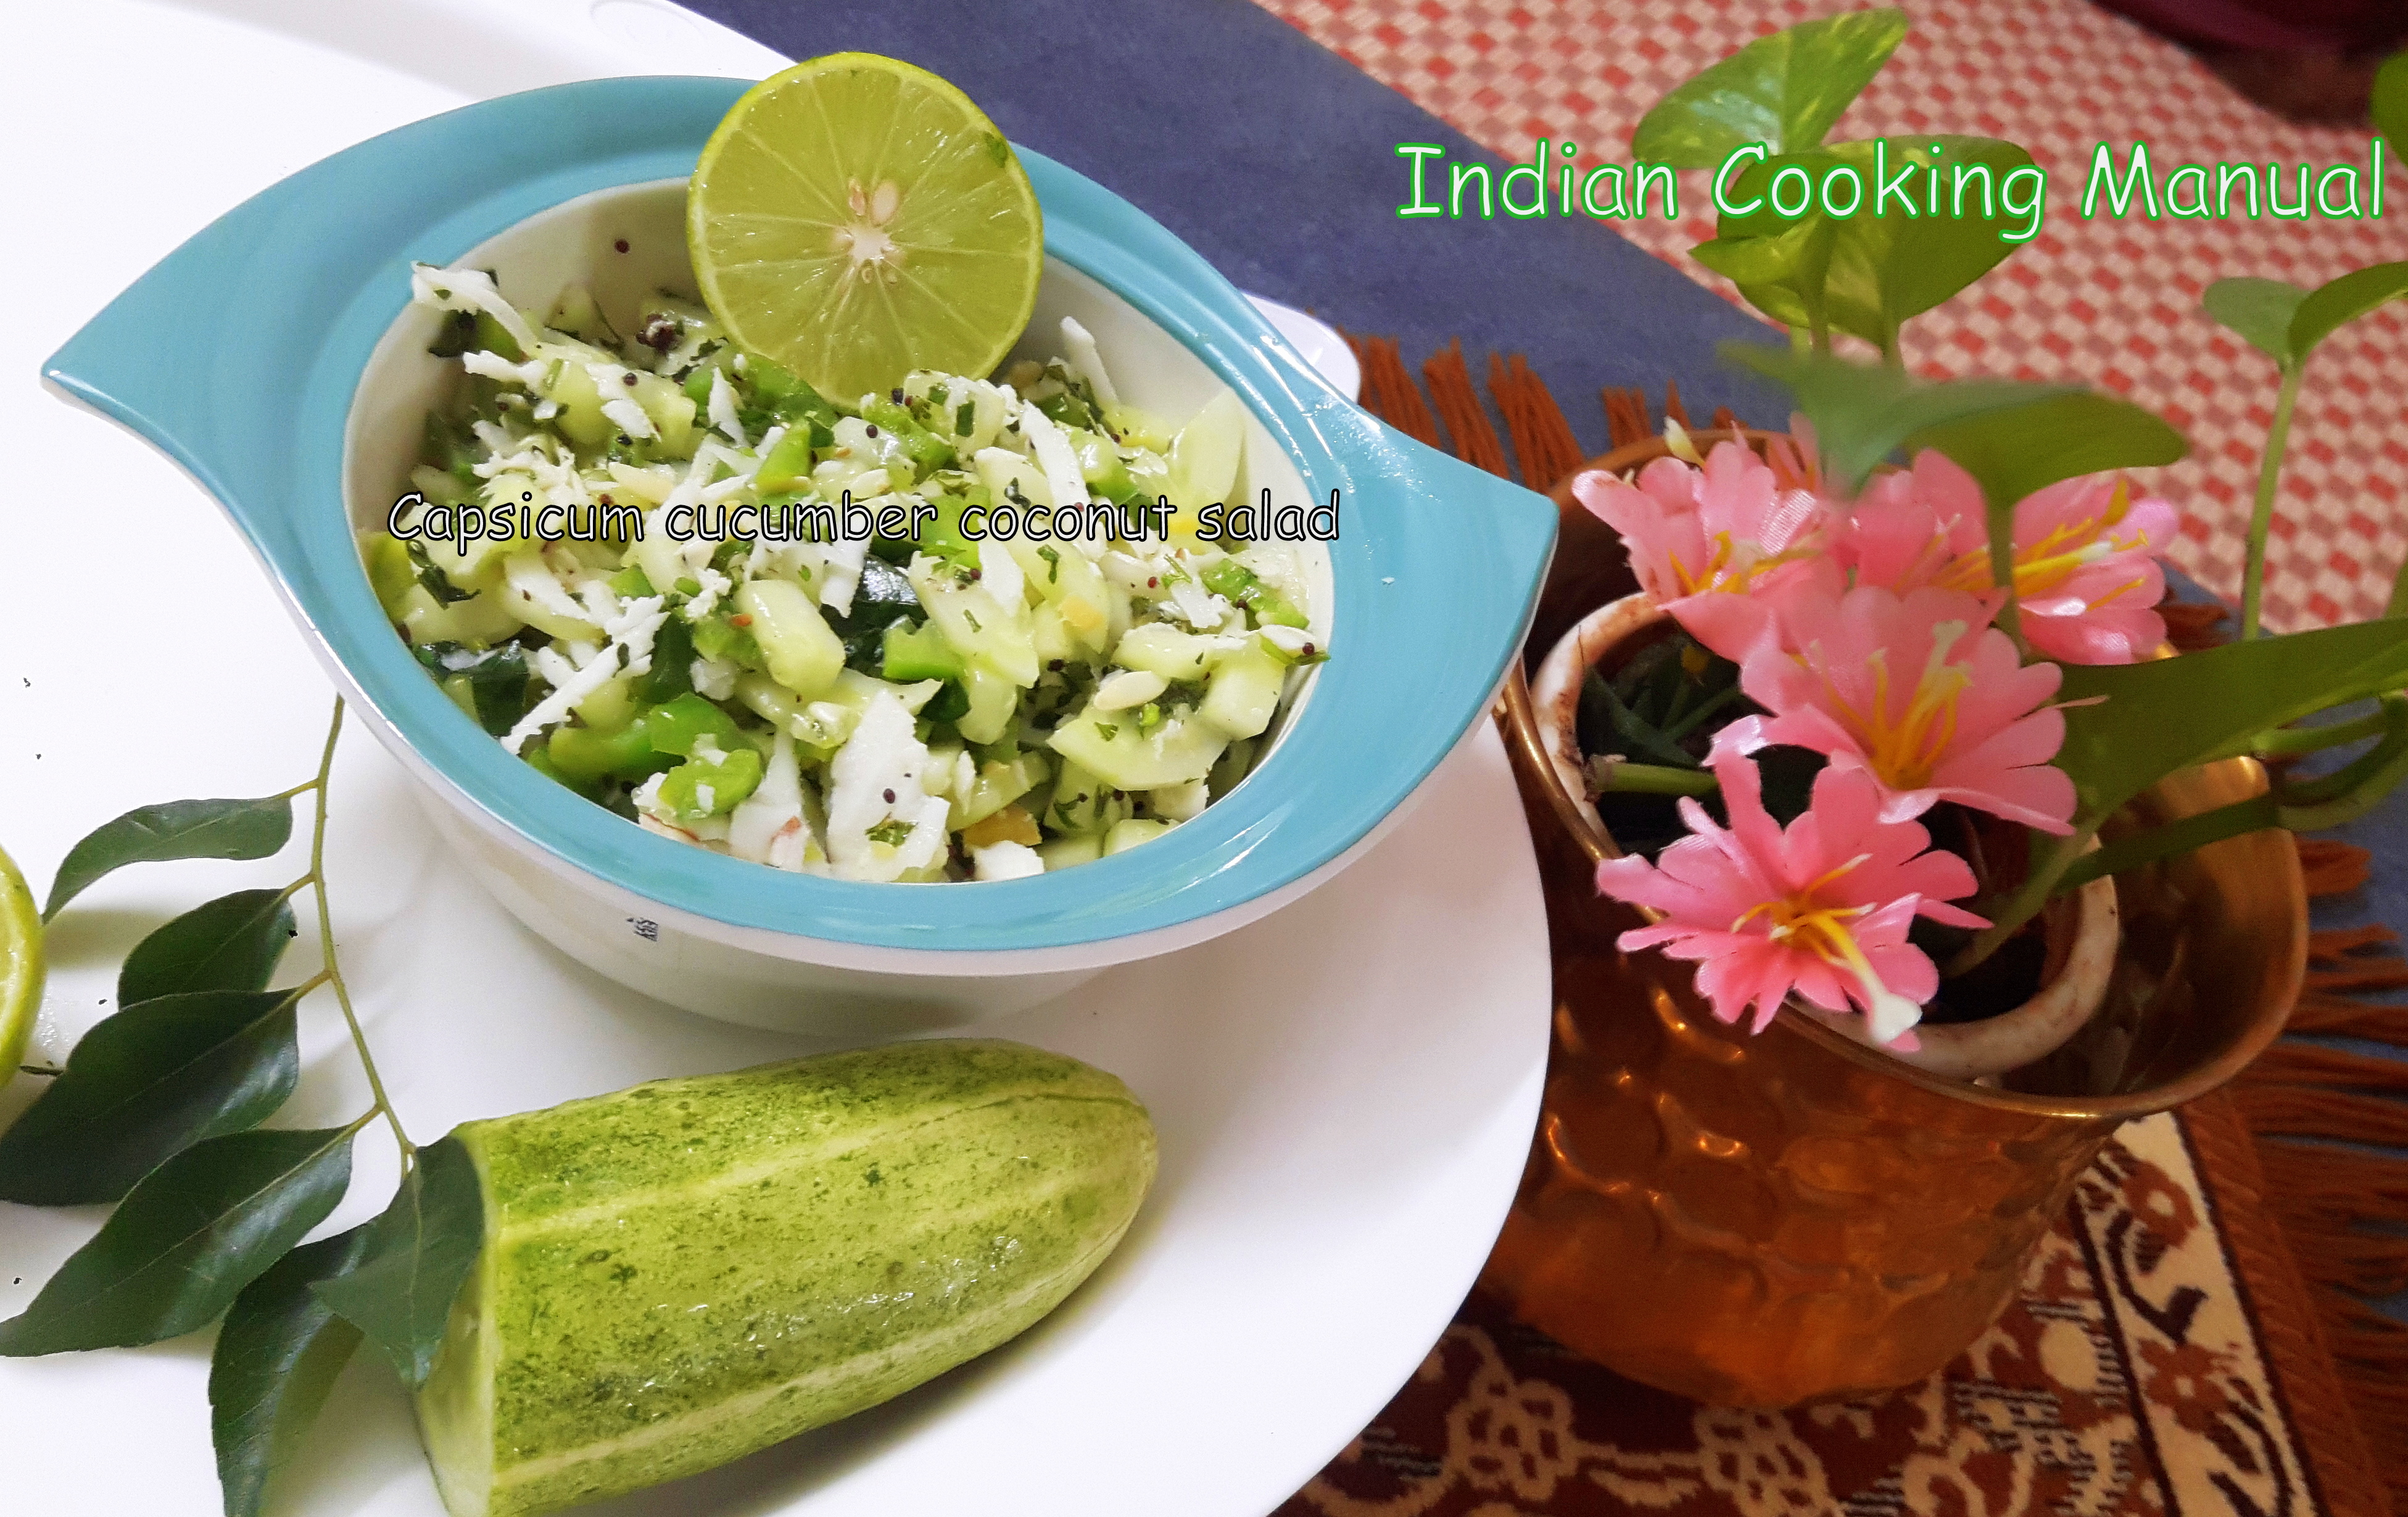 Capsicum-Cucumber-Coconut Salad